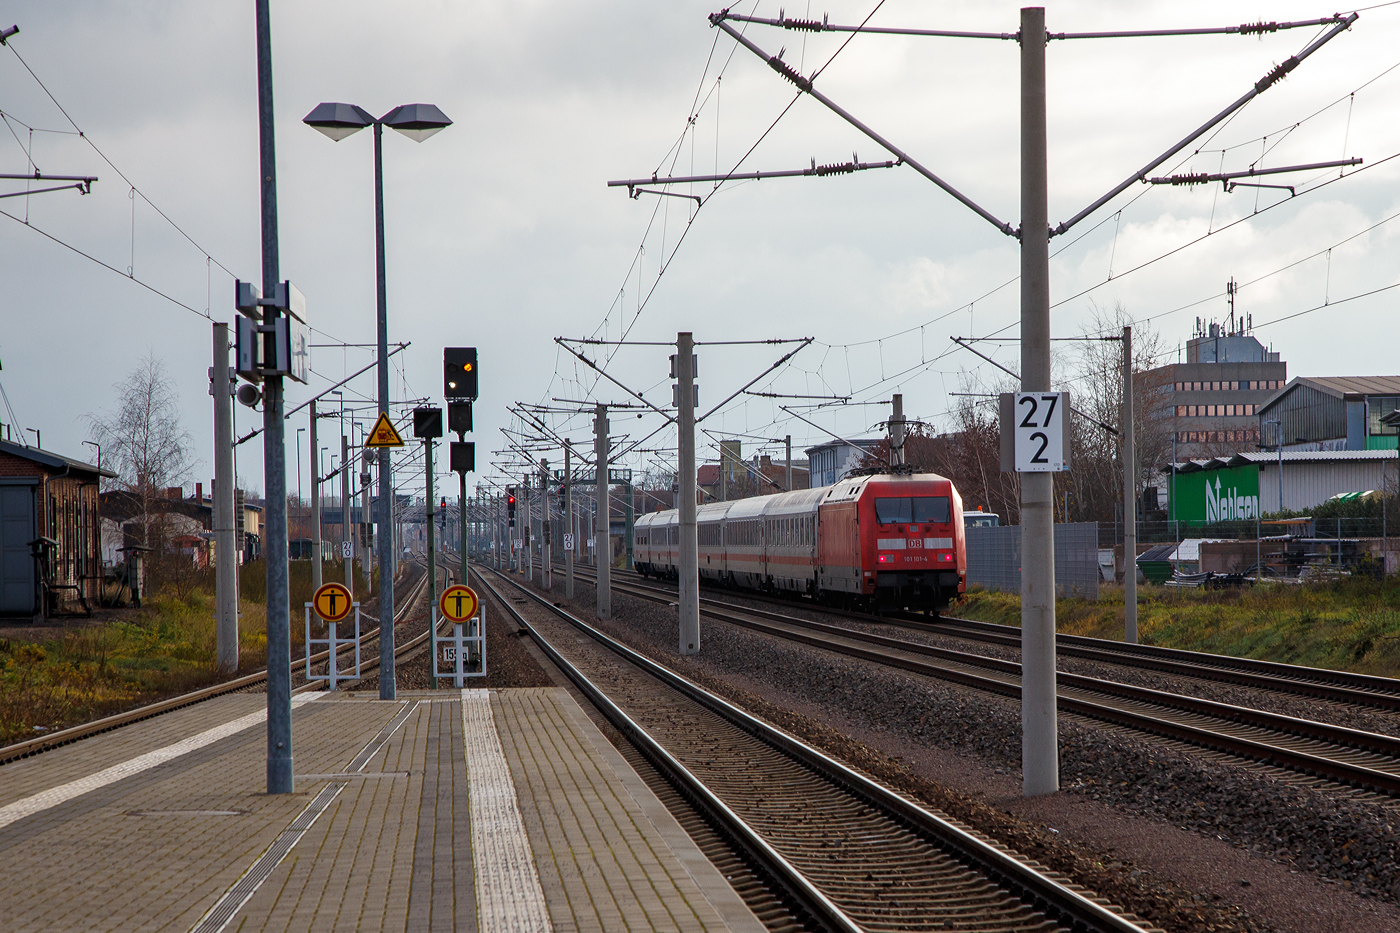 Bahnhof Radebeul Ost am 07.12.2022:
Rechts rauscht die 101 101-4 (91 80 6101 101-4 D-DB) mit einem Steuerwagen voraus in Richtung Dresden. 

Der IC fährt über die Bahnstrecke Leipzig–Dresden (KBS 500), sie eine zweigleisige elektrifizierte Hauptbahn für bis zu 200 km/h. Die von Leipzig über Wurzen, Oschatz und Riesa nach Dresden führende Trasse (ca. 116 km lang) wurde bereits 1839 von der Leipzig-Dresdner Eisenbahn-Compagnie als erste deutsche Ferneisenbahn erbaut und gehört damit zu den ältesten Bahnstrecken in der Geschichte der Eisenbahn in Deutschland. Seit 1993 wird die Strecke als Verkehrsprojekt Deutsche Einheit Nr. 9 ausgebaut. 

Links (rechts und links vom Bahnsteig) die Bahnstrecke Pirna–Coswig (KBS 241.1), sie ist eine zweigleisige elektrifizierte Hauptbahn für bis zu 120 km/h, die vorwiegend der S-Bahn Dresden dient. Sie verläuft auf gleichem Bahnkörper parallel zu den bestehenden Hauptbahnen Děčín–Dresden und Dresden–Leipzig. Der Abschnitt zwischen Pirna und Dresden-Neustadt ist seit 2004 in Betrieb, das Gesamtprojekt wurde im März 2016 mit der Fertigstellung der verbliebenen Strecke Dresden-Neustadt–Coswig abgeschlossen.
